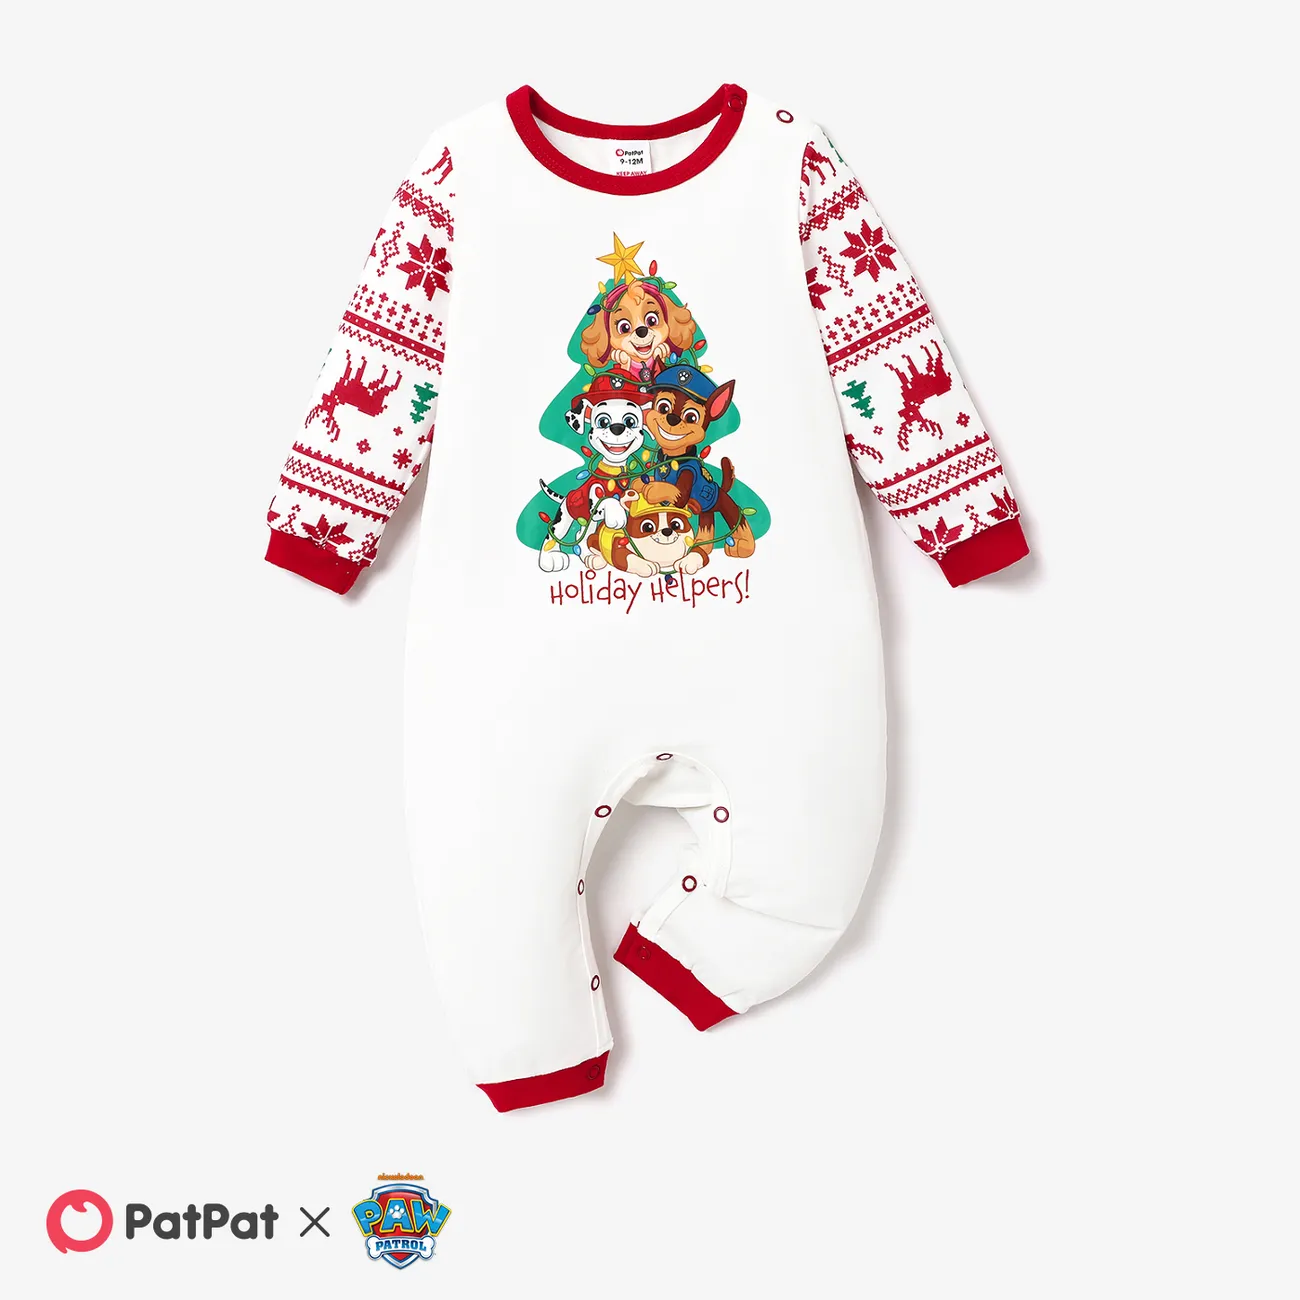 PAW Patrol Christmas Family Matching Character Print Pajamas Sets (Flame Resistant)  big image 1